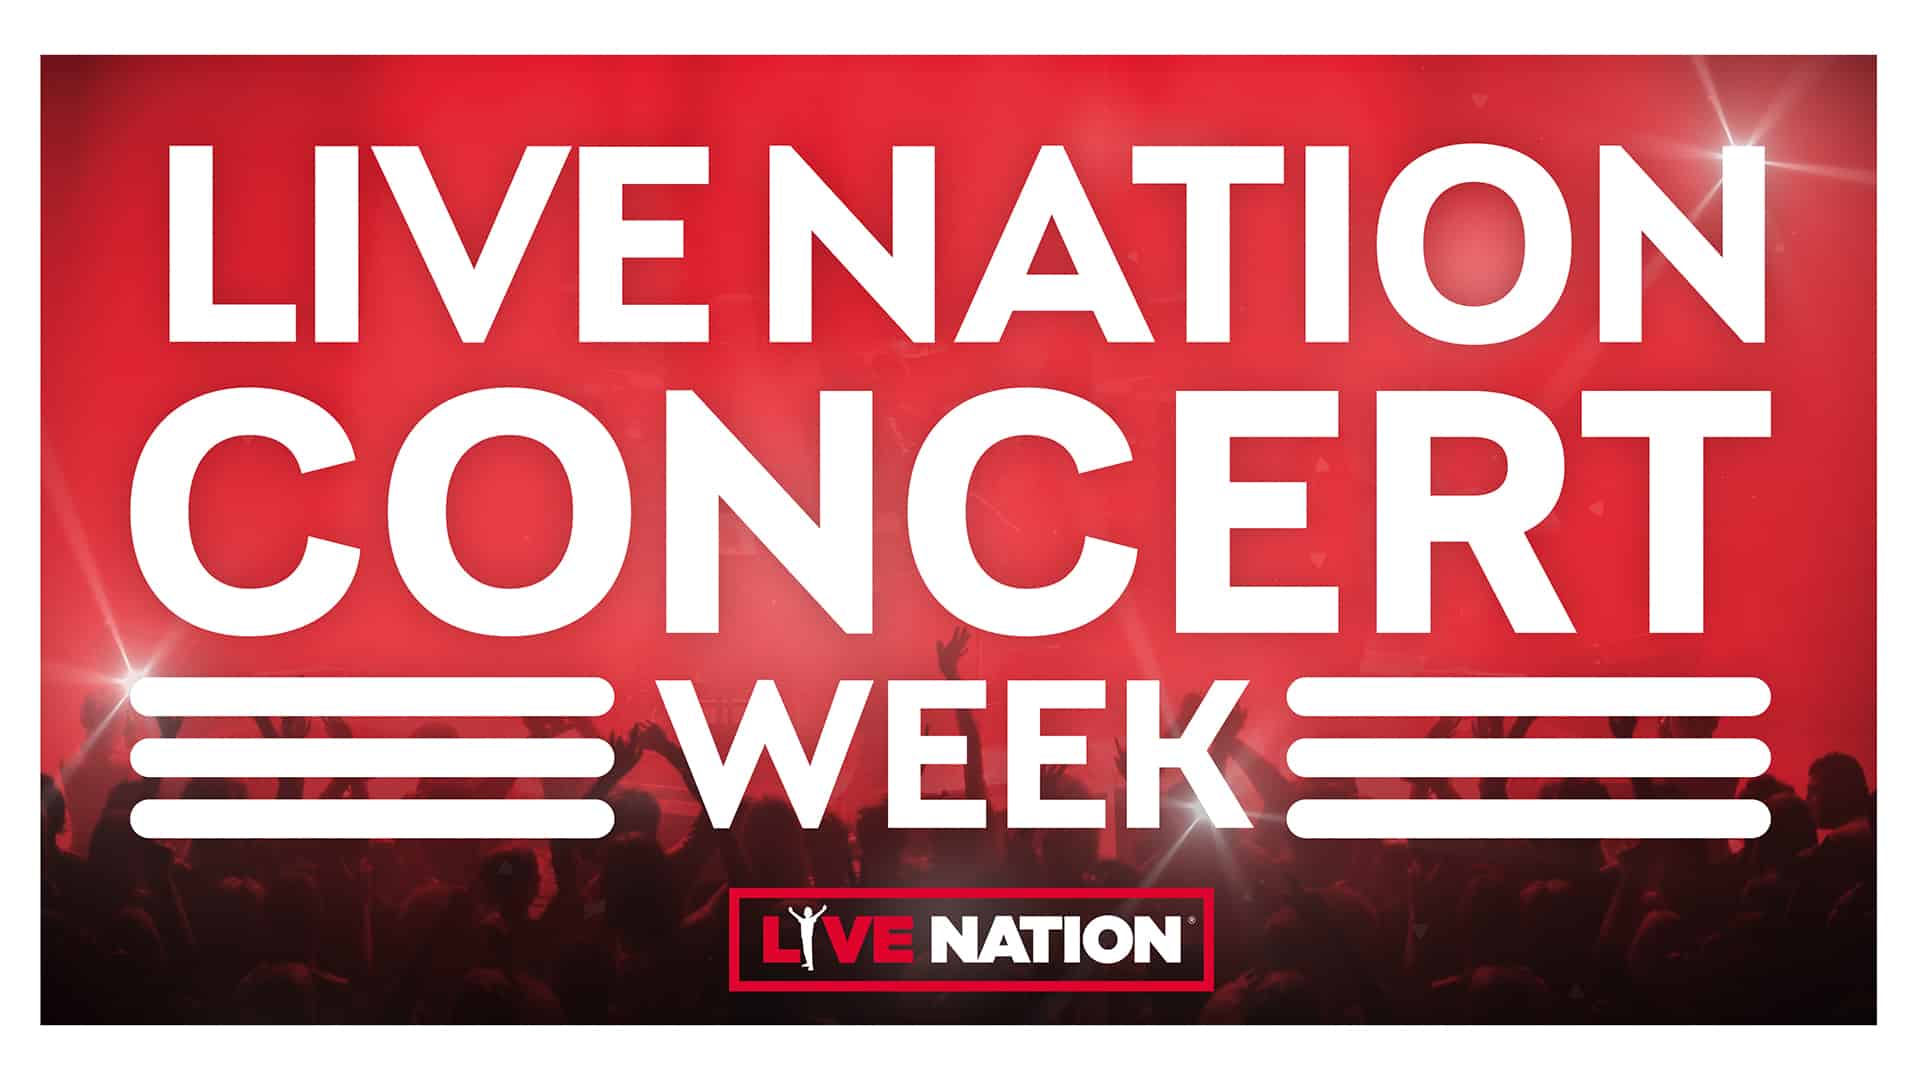 Live Nation Concert Week 2019